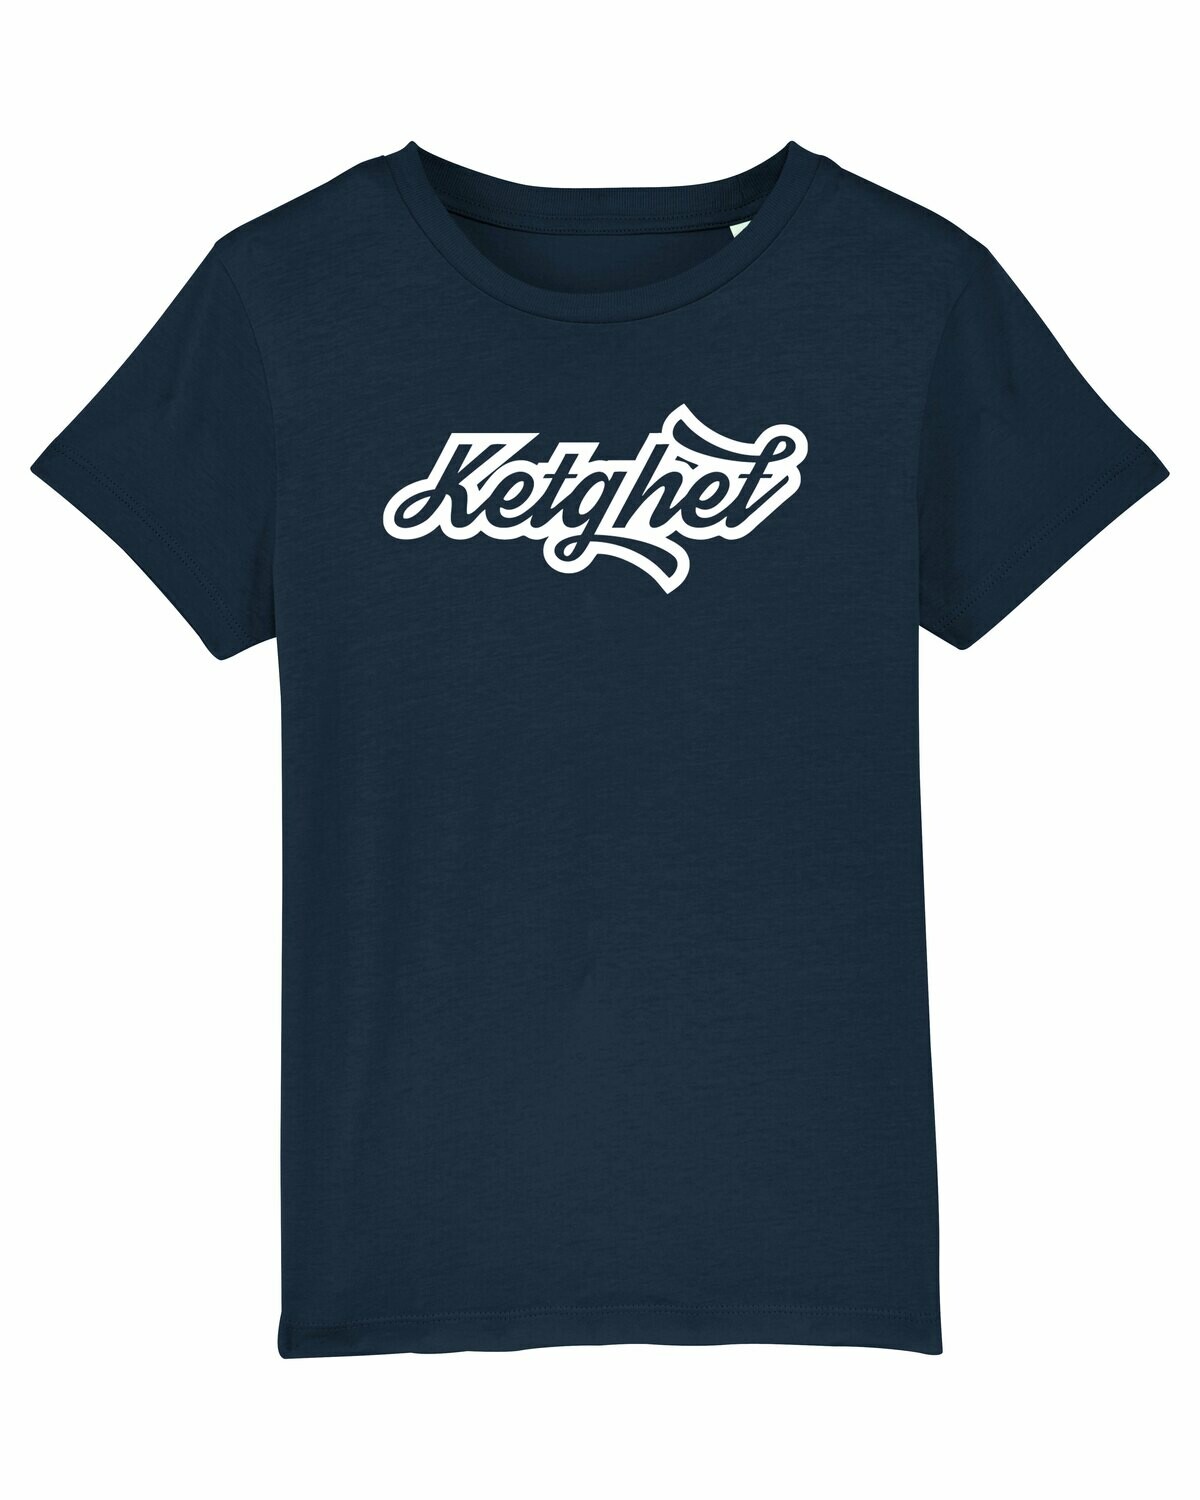 Kids T-shirt Ketghet